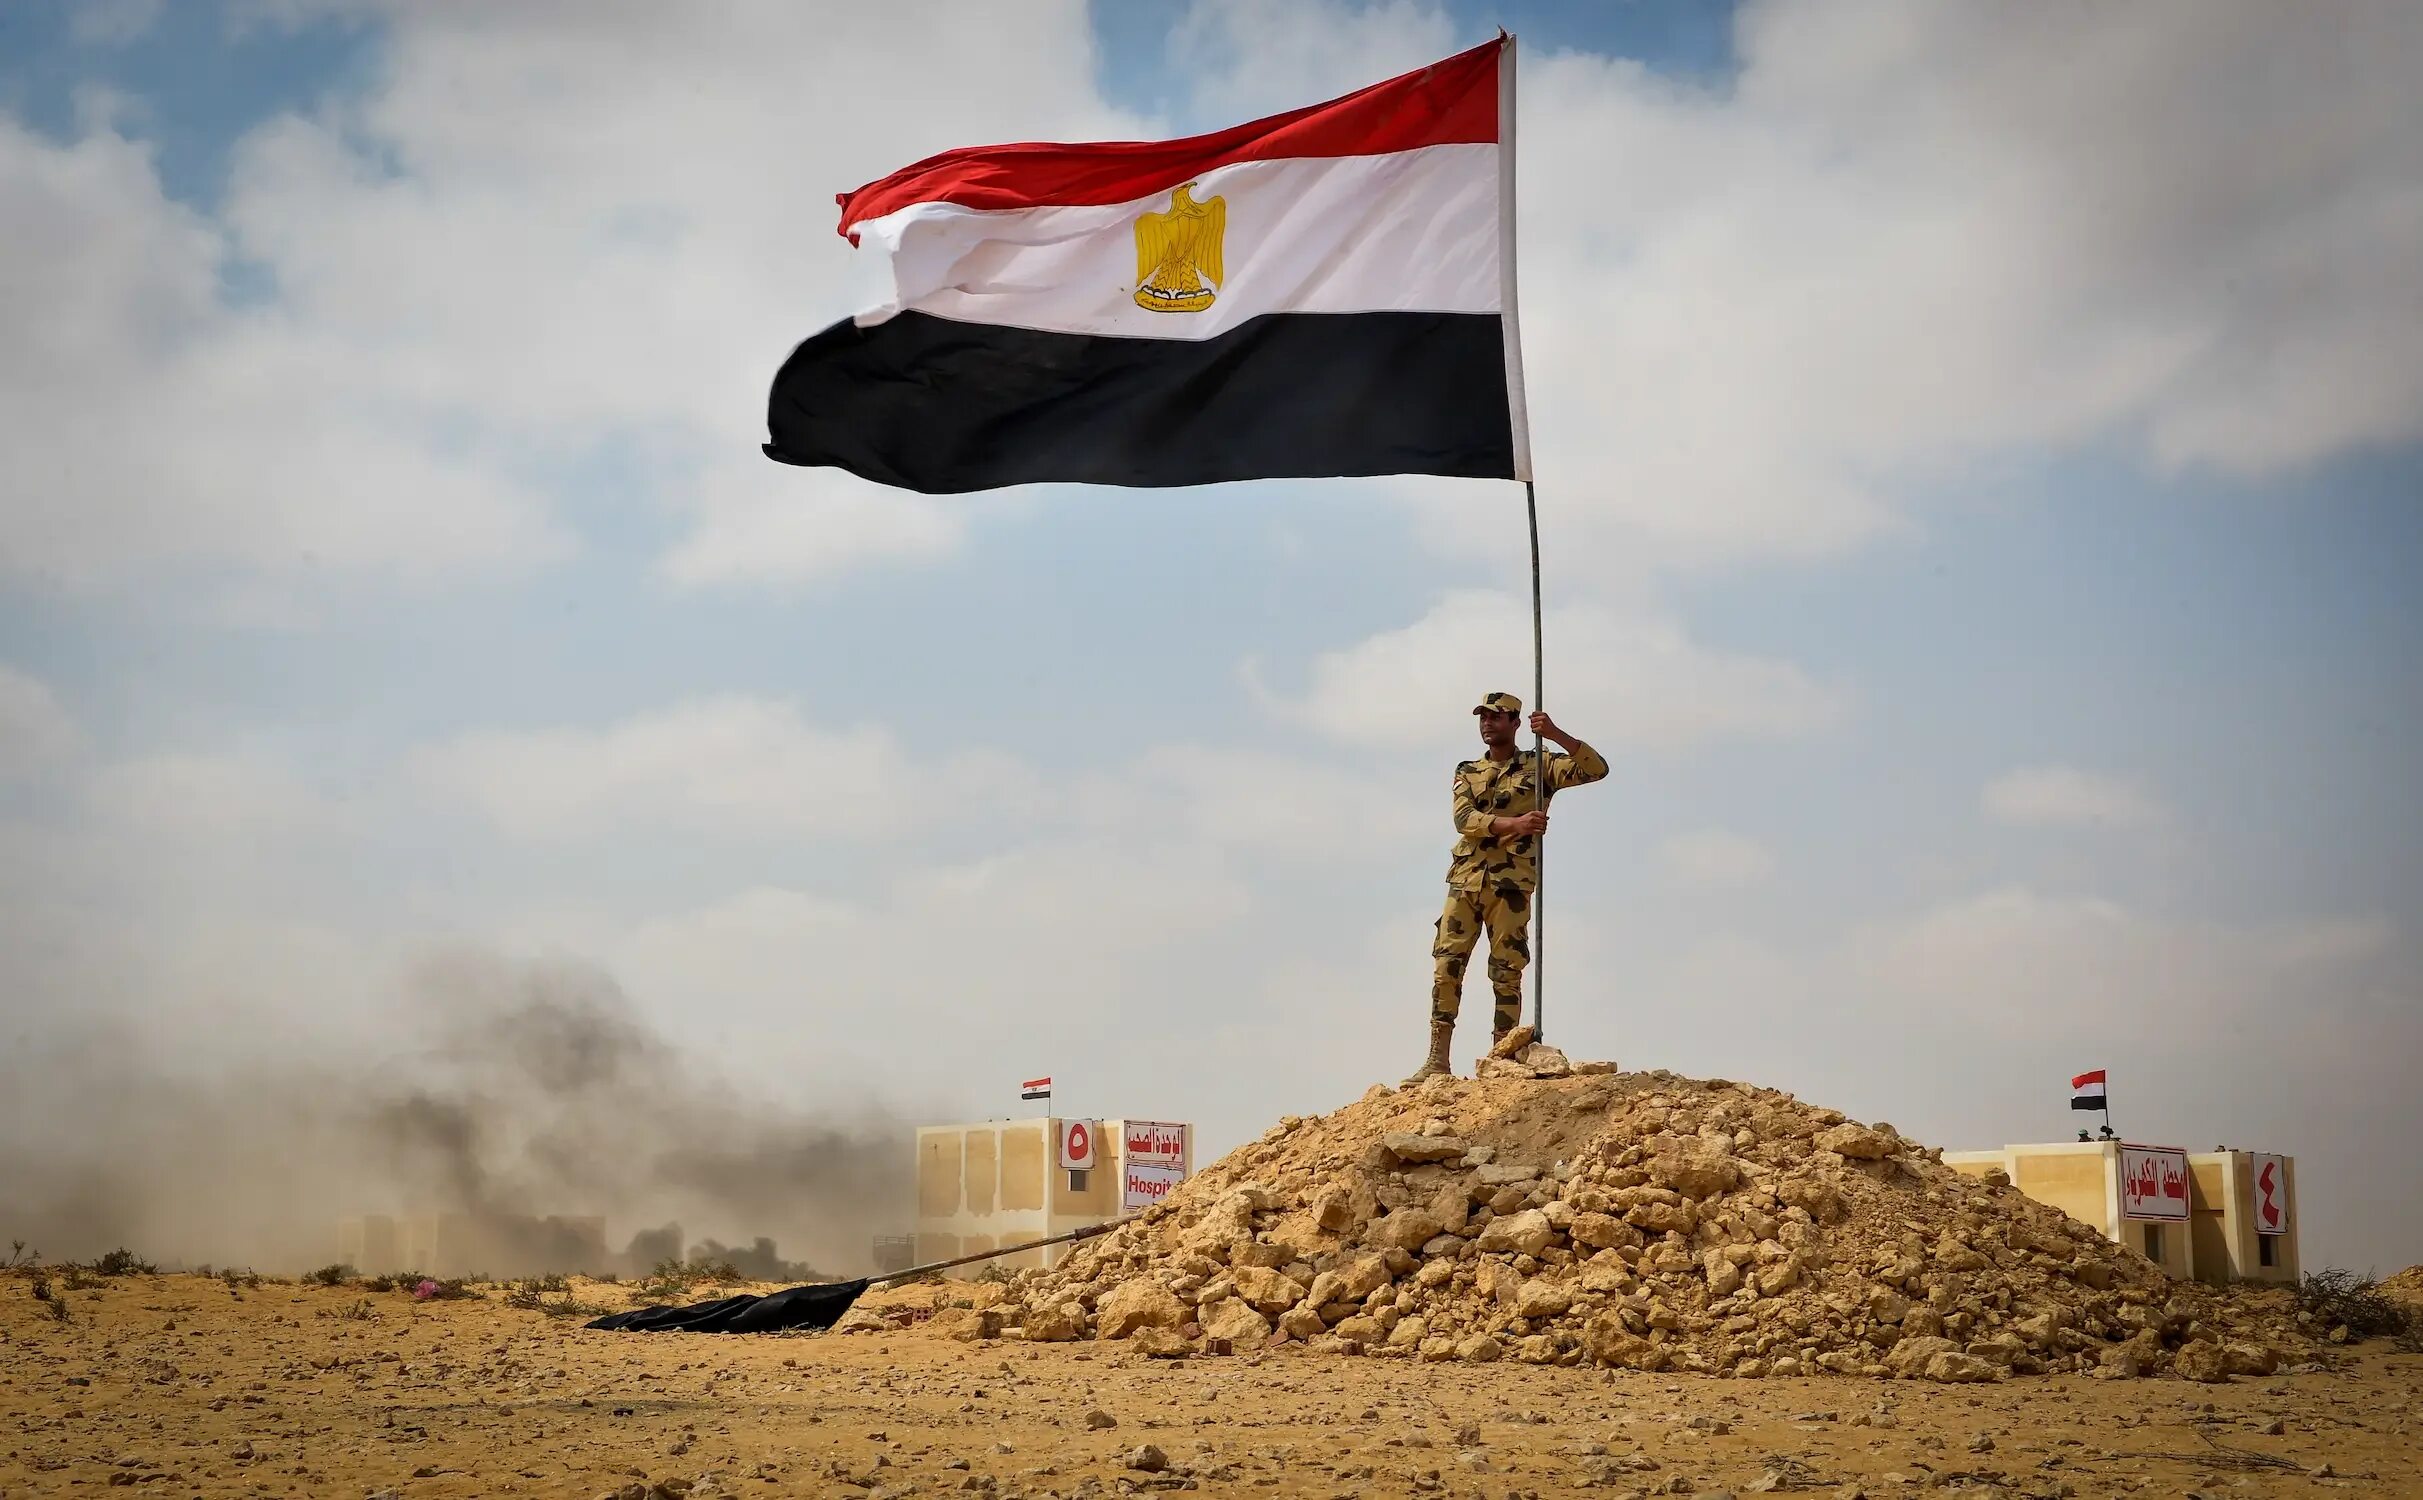 7 6 октябрь. Флаг Египта. Солдаты Египта. Люди с флагом Египта. Сухопутные войска Египта.